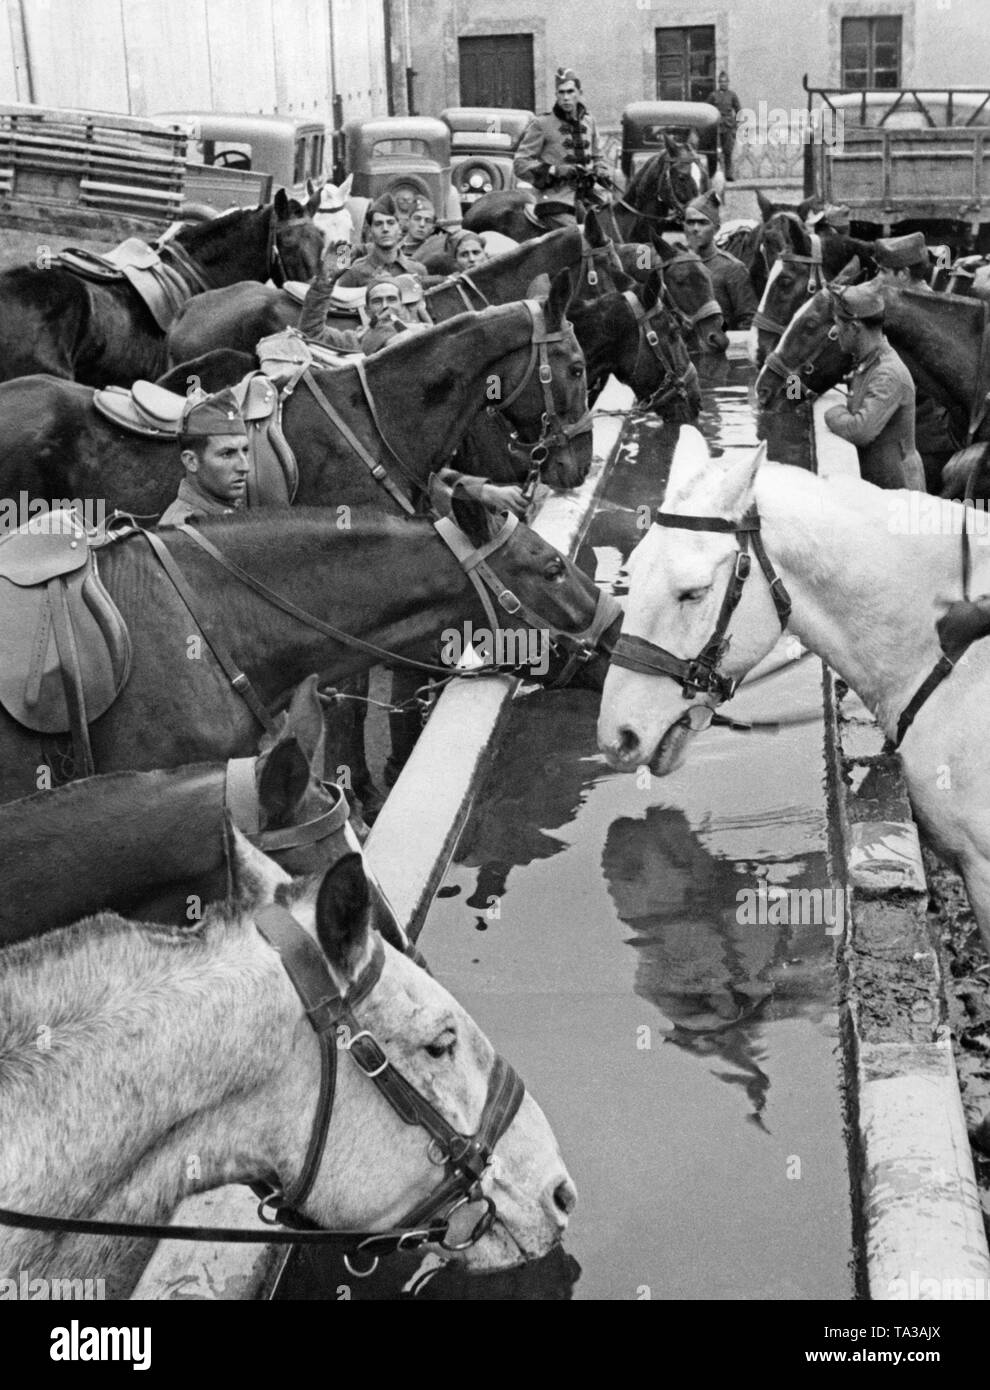 Photo de chevaux de cavalerie potable avec cavaliers à un point d'eau au cours de la formation des recrues. Dans l'arrière-plan, la caserne des capacités, ainsi que les voitures et camions. L'instructeur (à cheval en uniforme) observe la scène. Banque D'Images